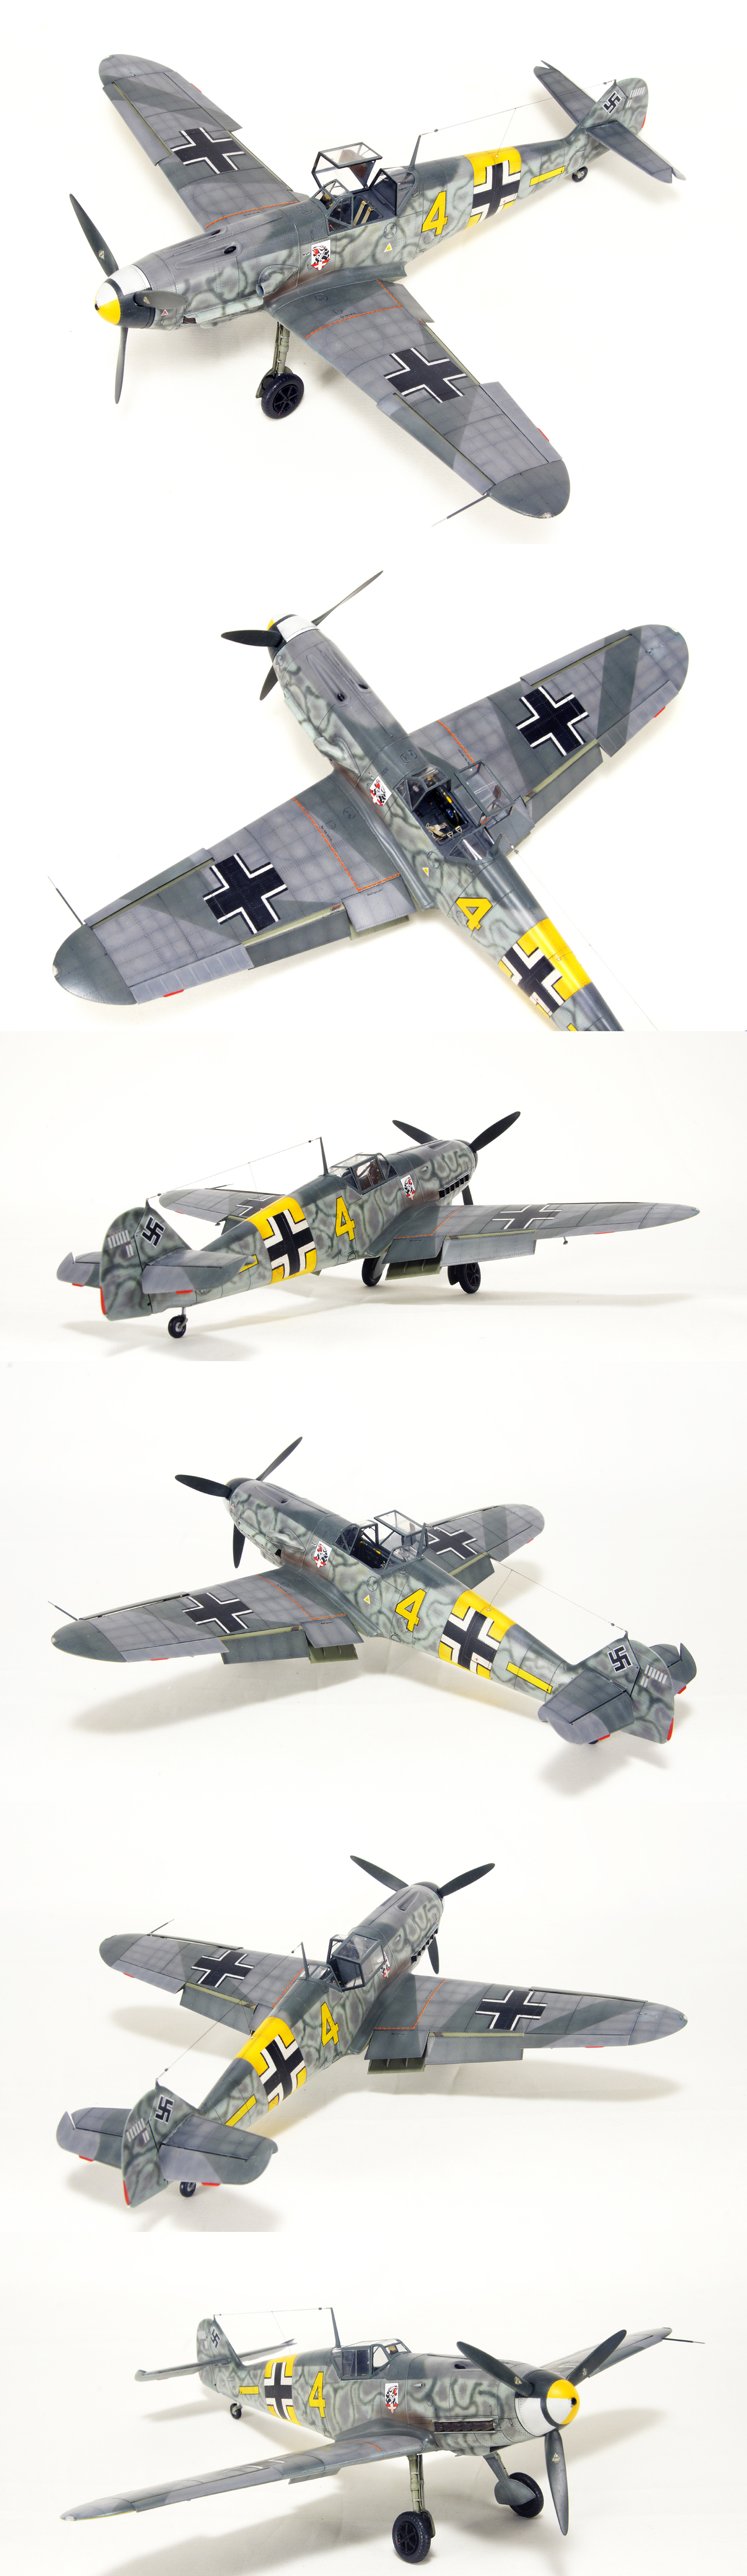 【オファー】完成品 1/48 Bf109 F-2. Yellow 4 . 6 / Jg 54 . (キャノピー開閉可能) 完成品